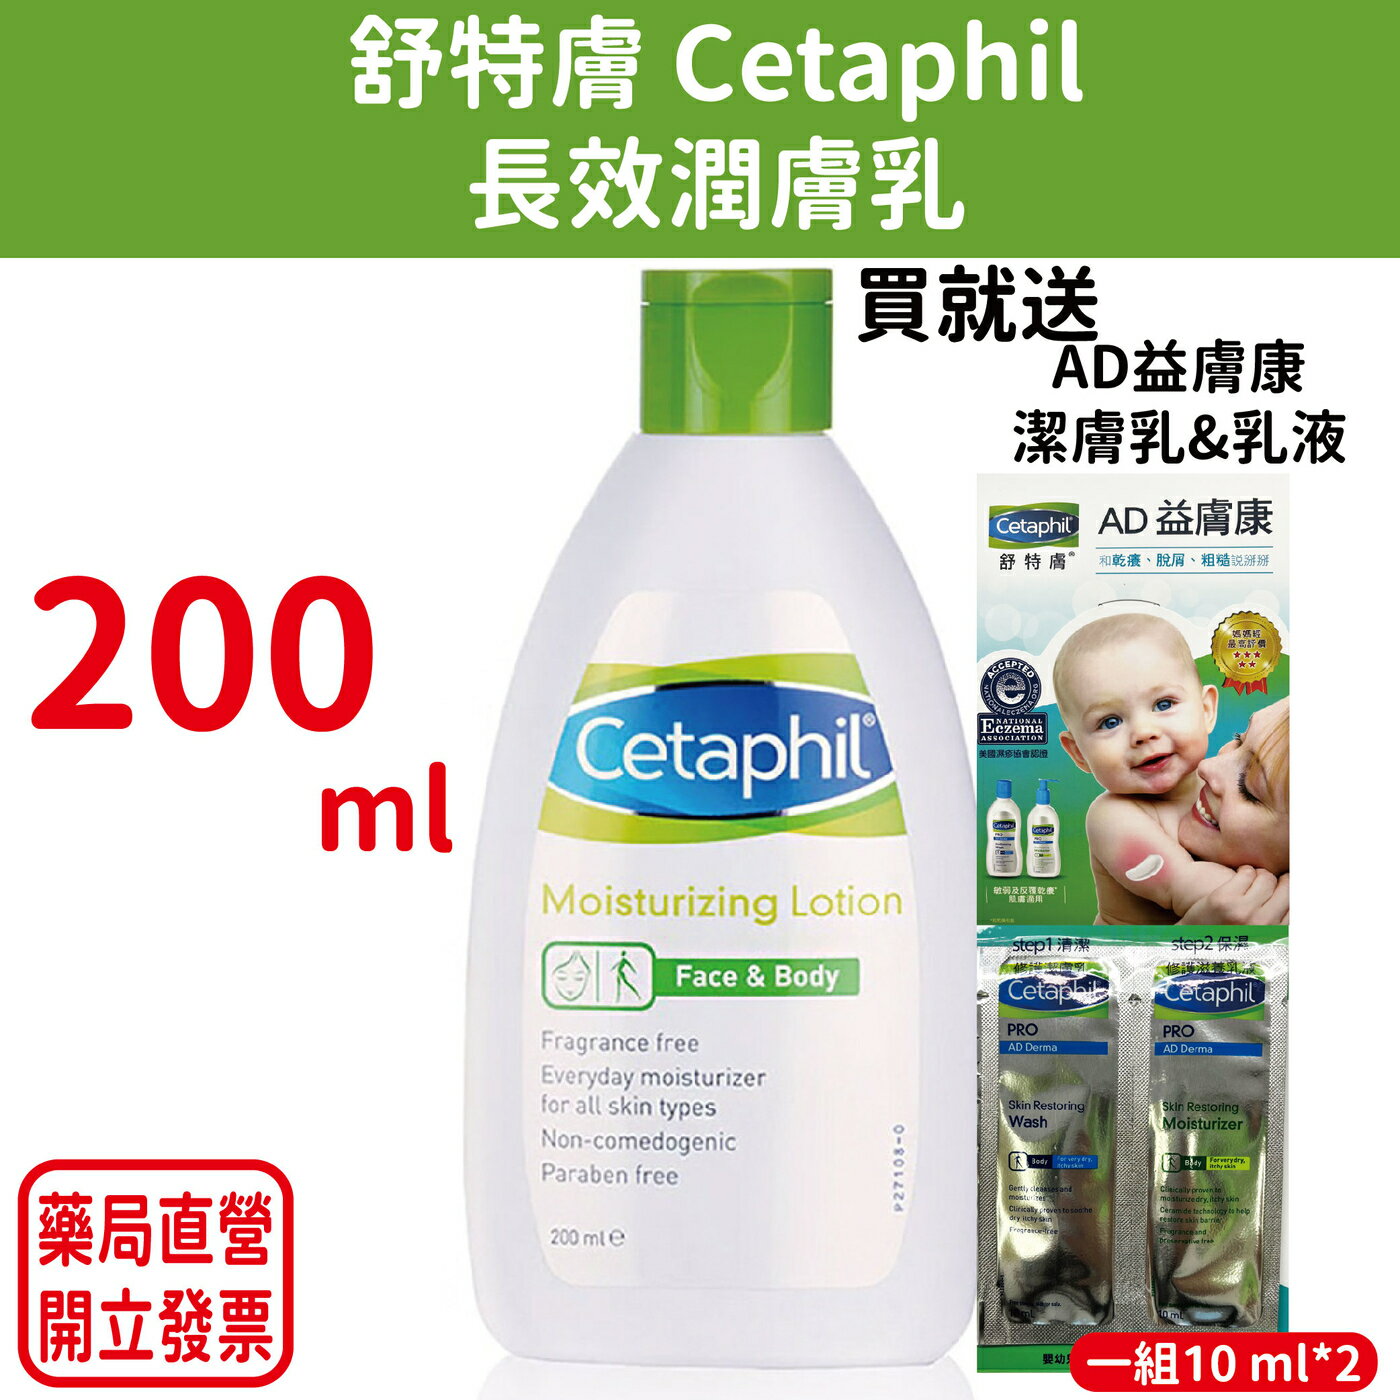 舒特膚Cetaphil長效潤膚乳 200ml 買就送10ml潔膚乳&乳液